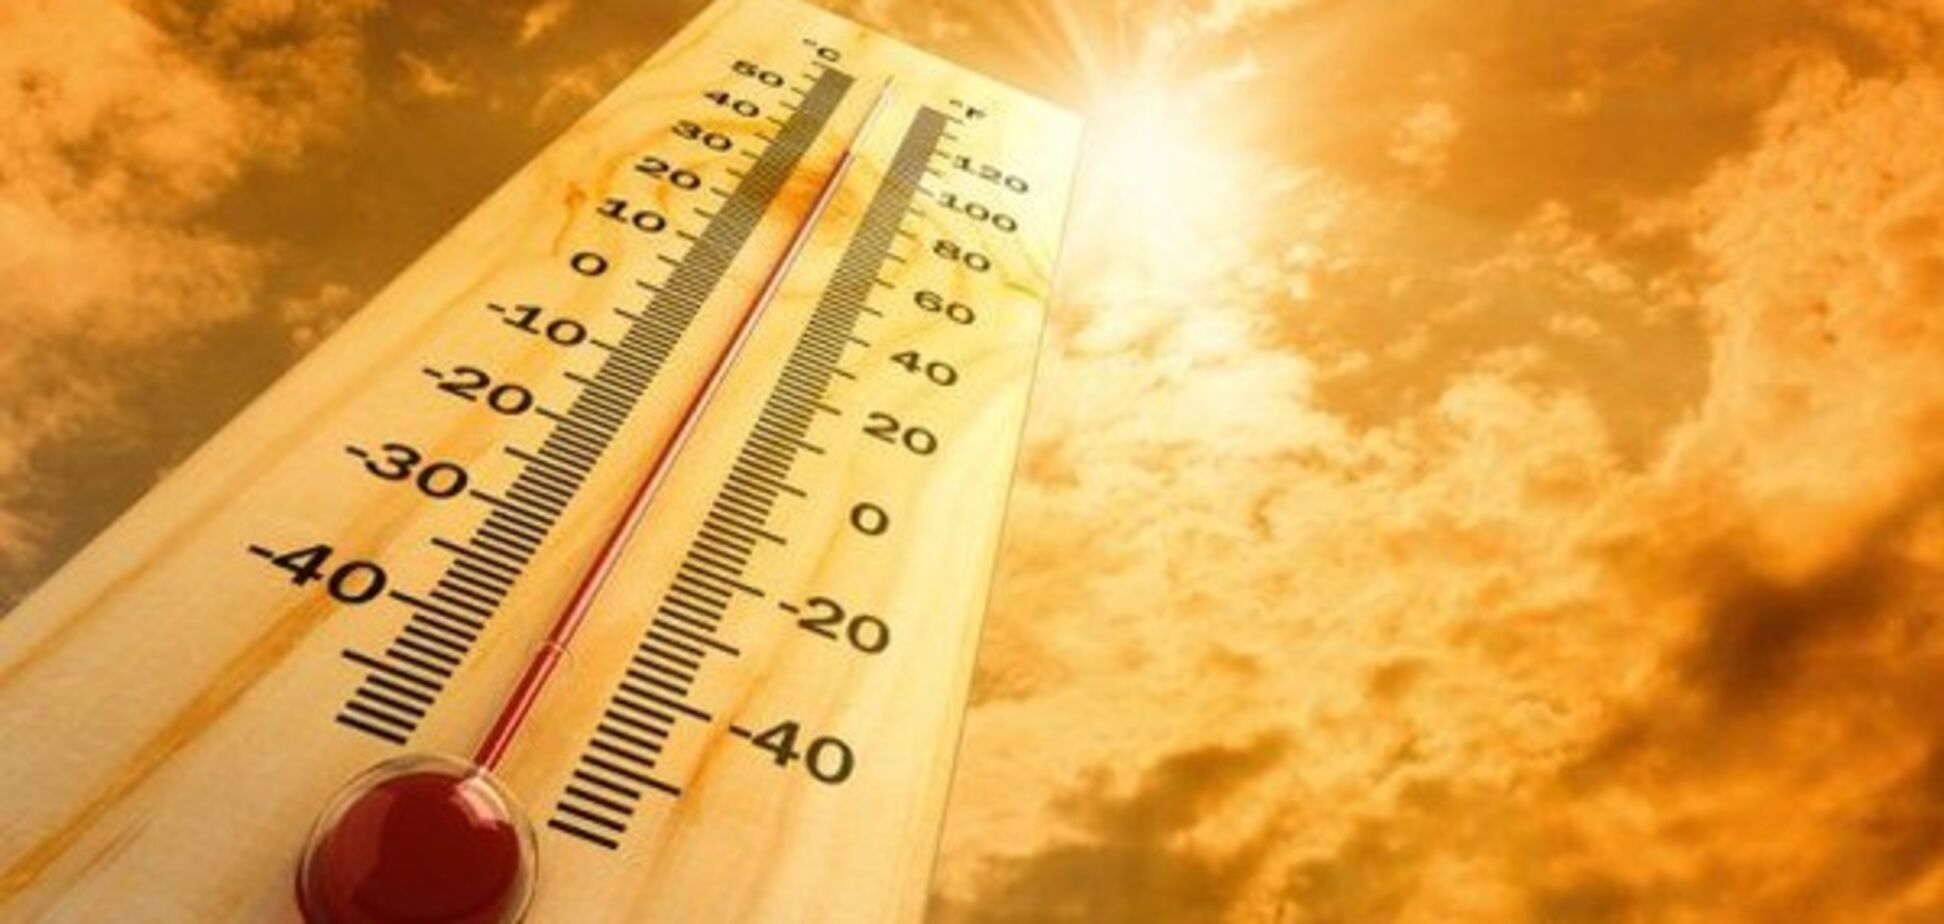 Буде ще спекотніше: синоптик дав прогноз погоди до кінця серпня